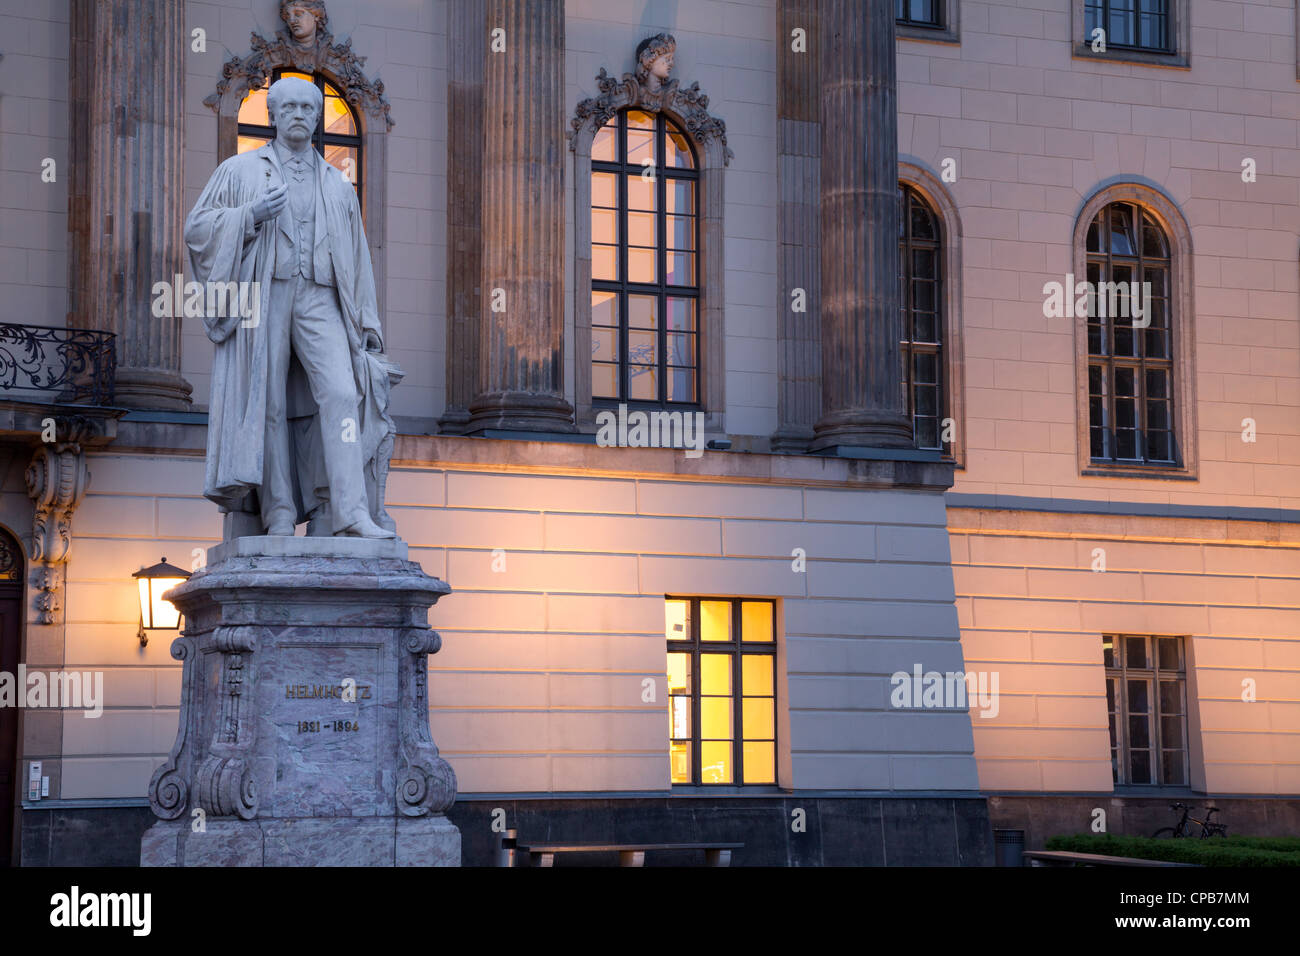 Humboldt-Universität mit Statue der Helmholtz-Gemeinschaft, Berlin, Deutschland Stockfoto